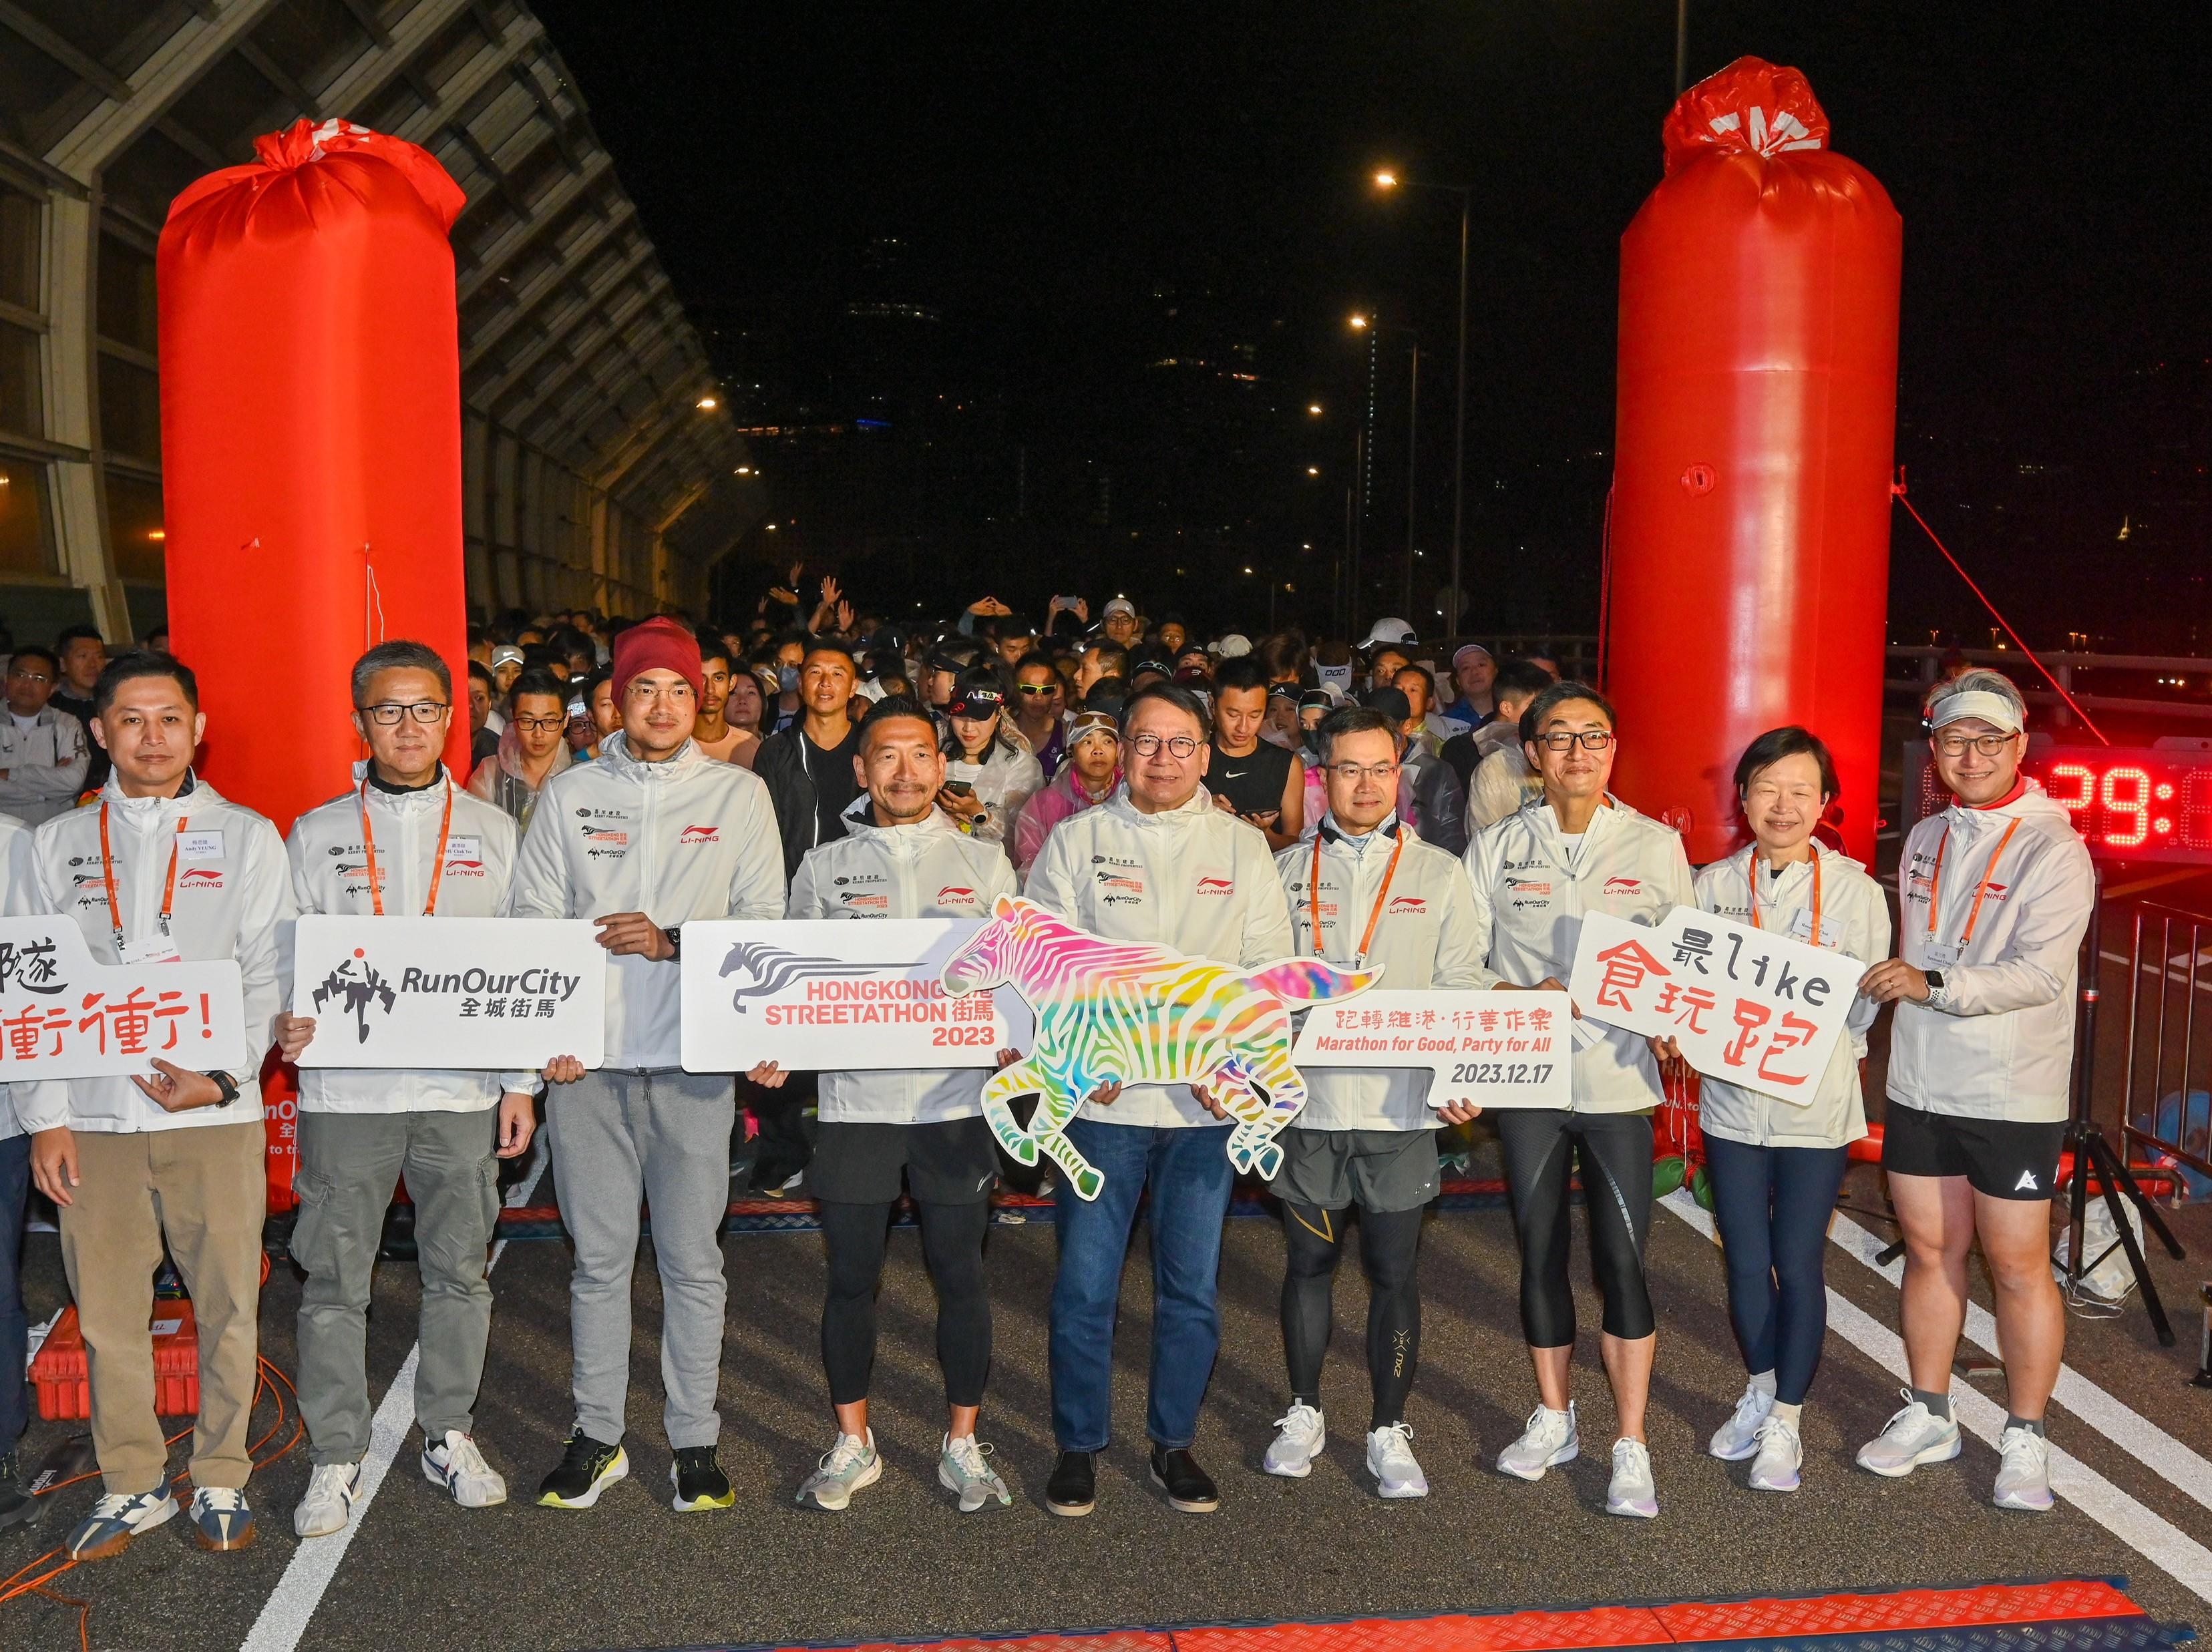 政务司司长陈国基今日（十二月十七日）出席「香港街马2023」慈善跑开跑典礼。图示陈国基（中）和一众嘉宾和跑手在起跑前合照。